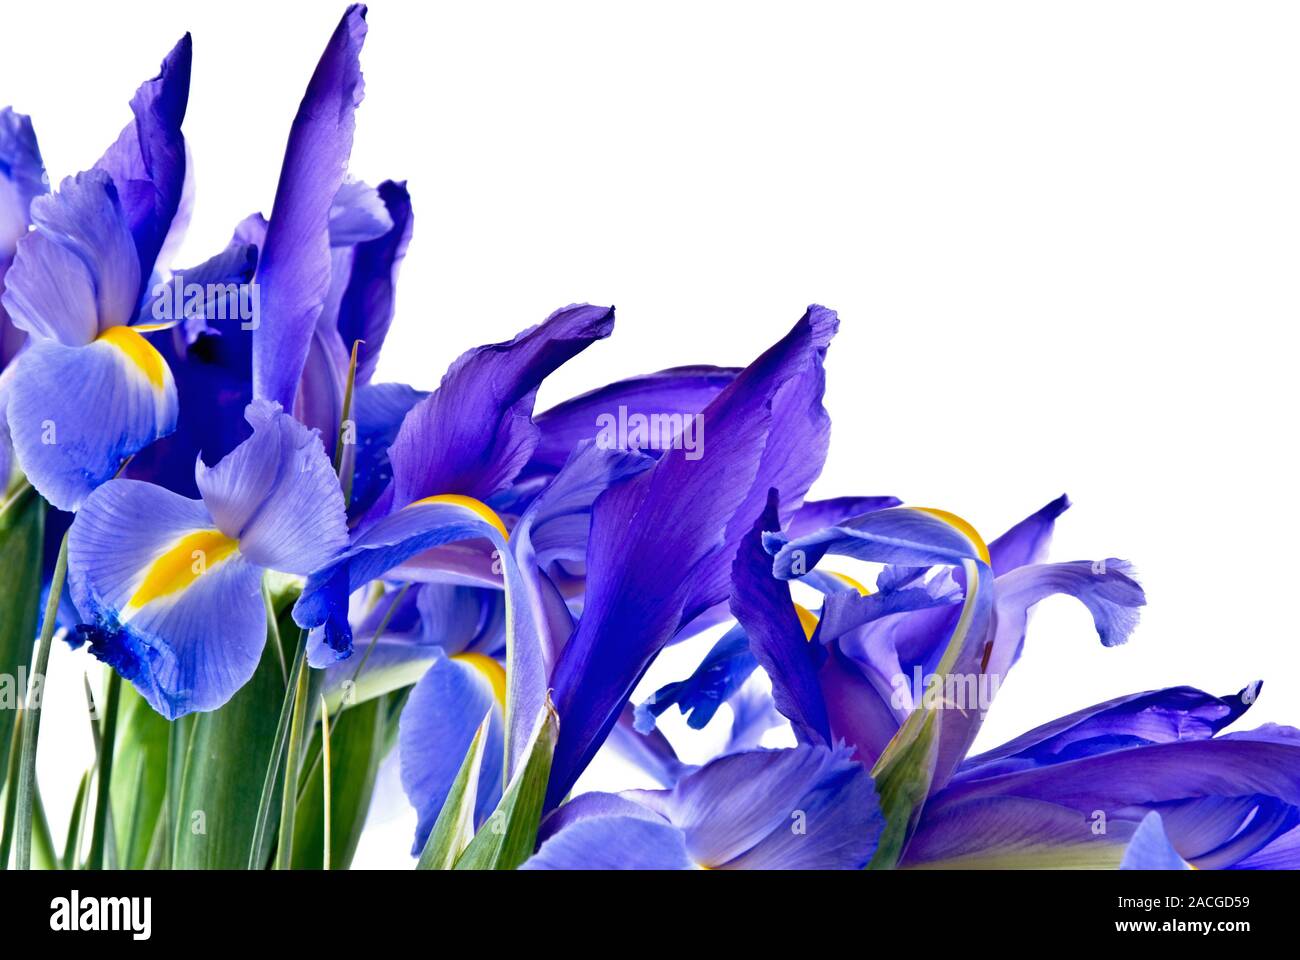 Fresh cut blue flag iris flowers form a border on an isolated ...